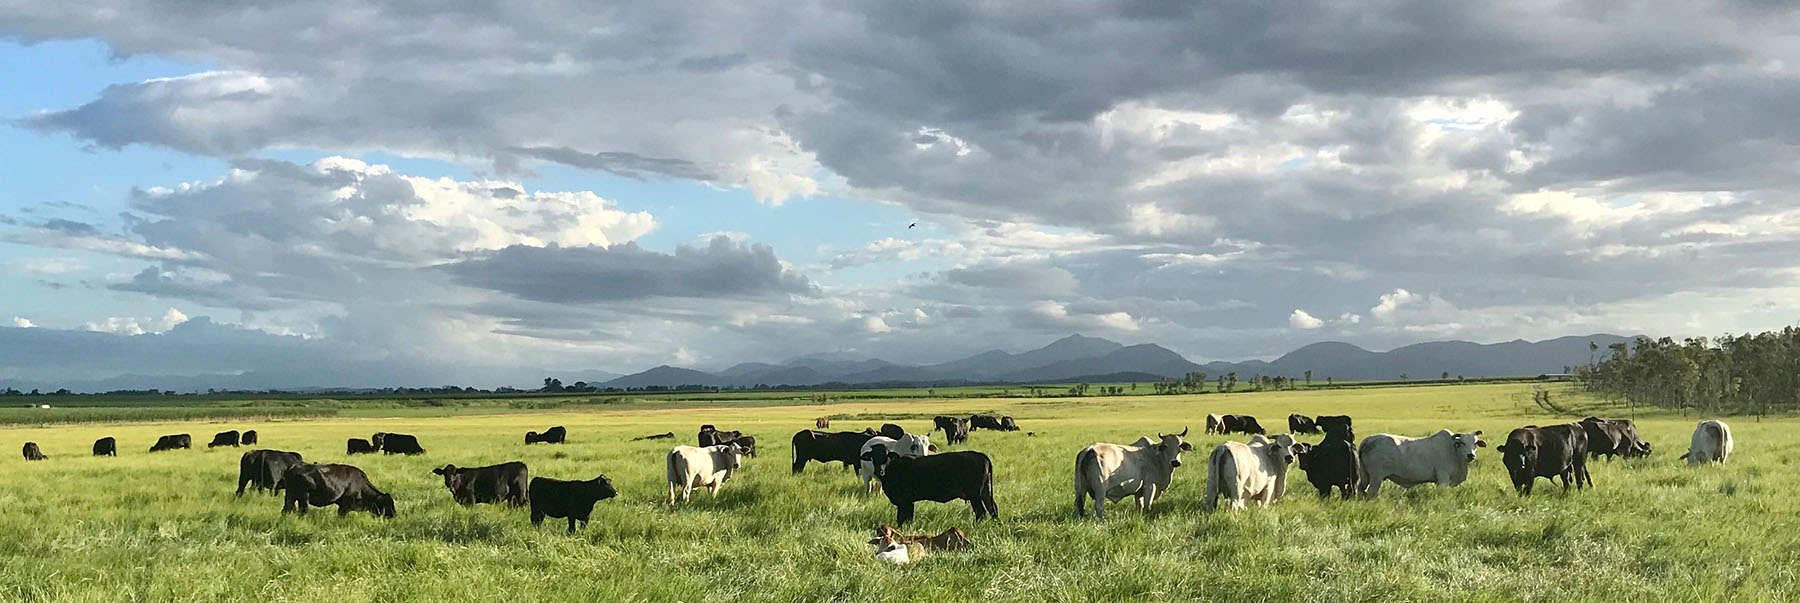 Cattle in green field